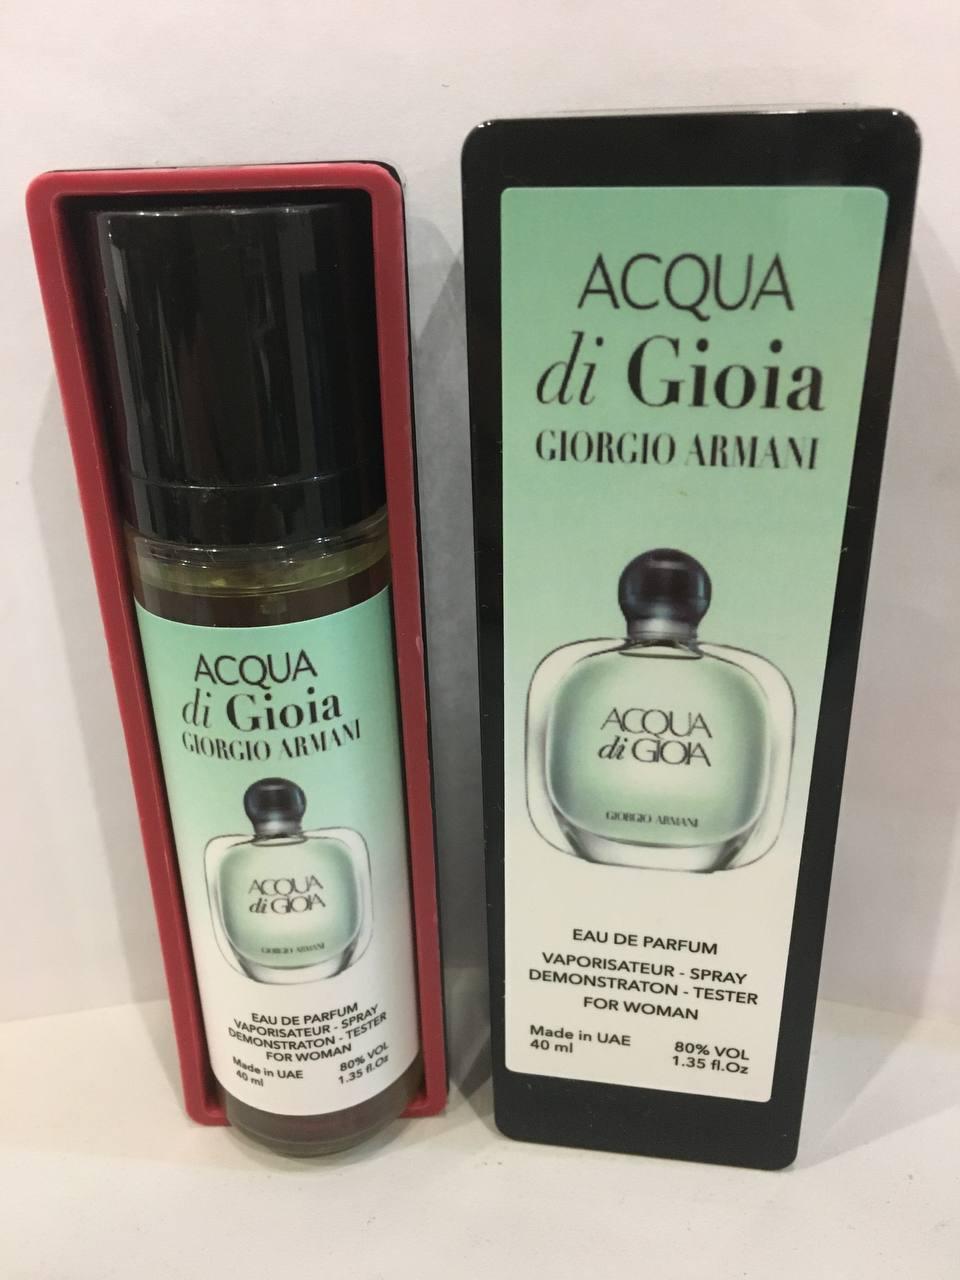 Джорджио Армани Джиола Giorgio Armani Acqua di Gioia мини-парфюм 40 мл